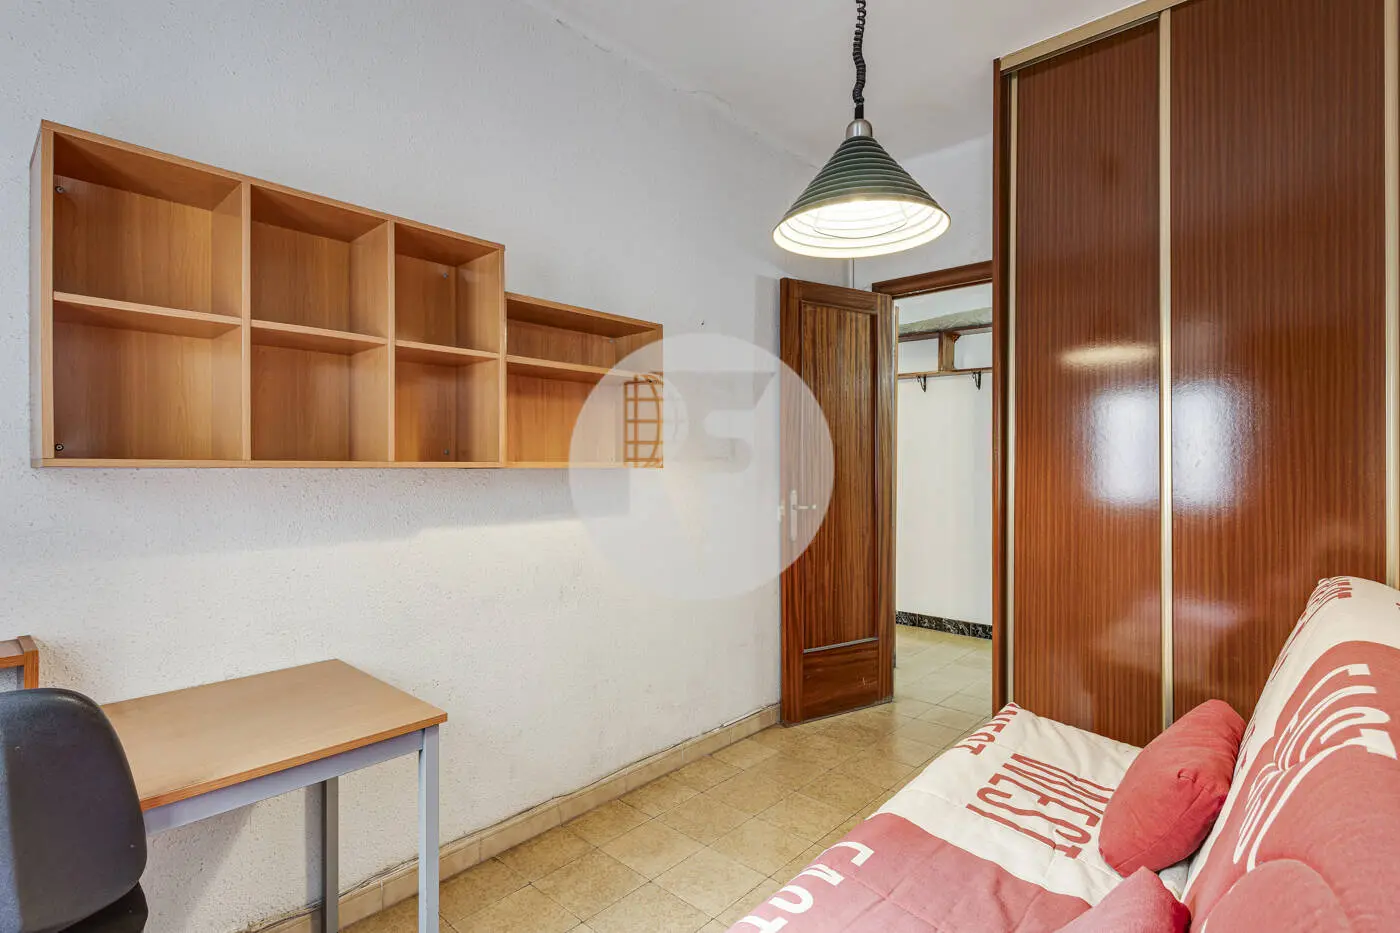 Piso de 3 habitaciones ubicado en el barrio de la Nova Esquerra de l'Eixample de Barcelona. 21